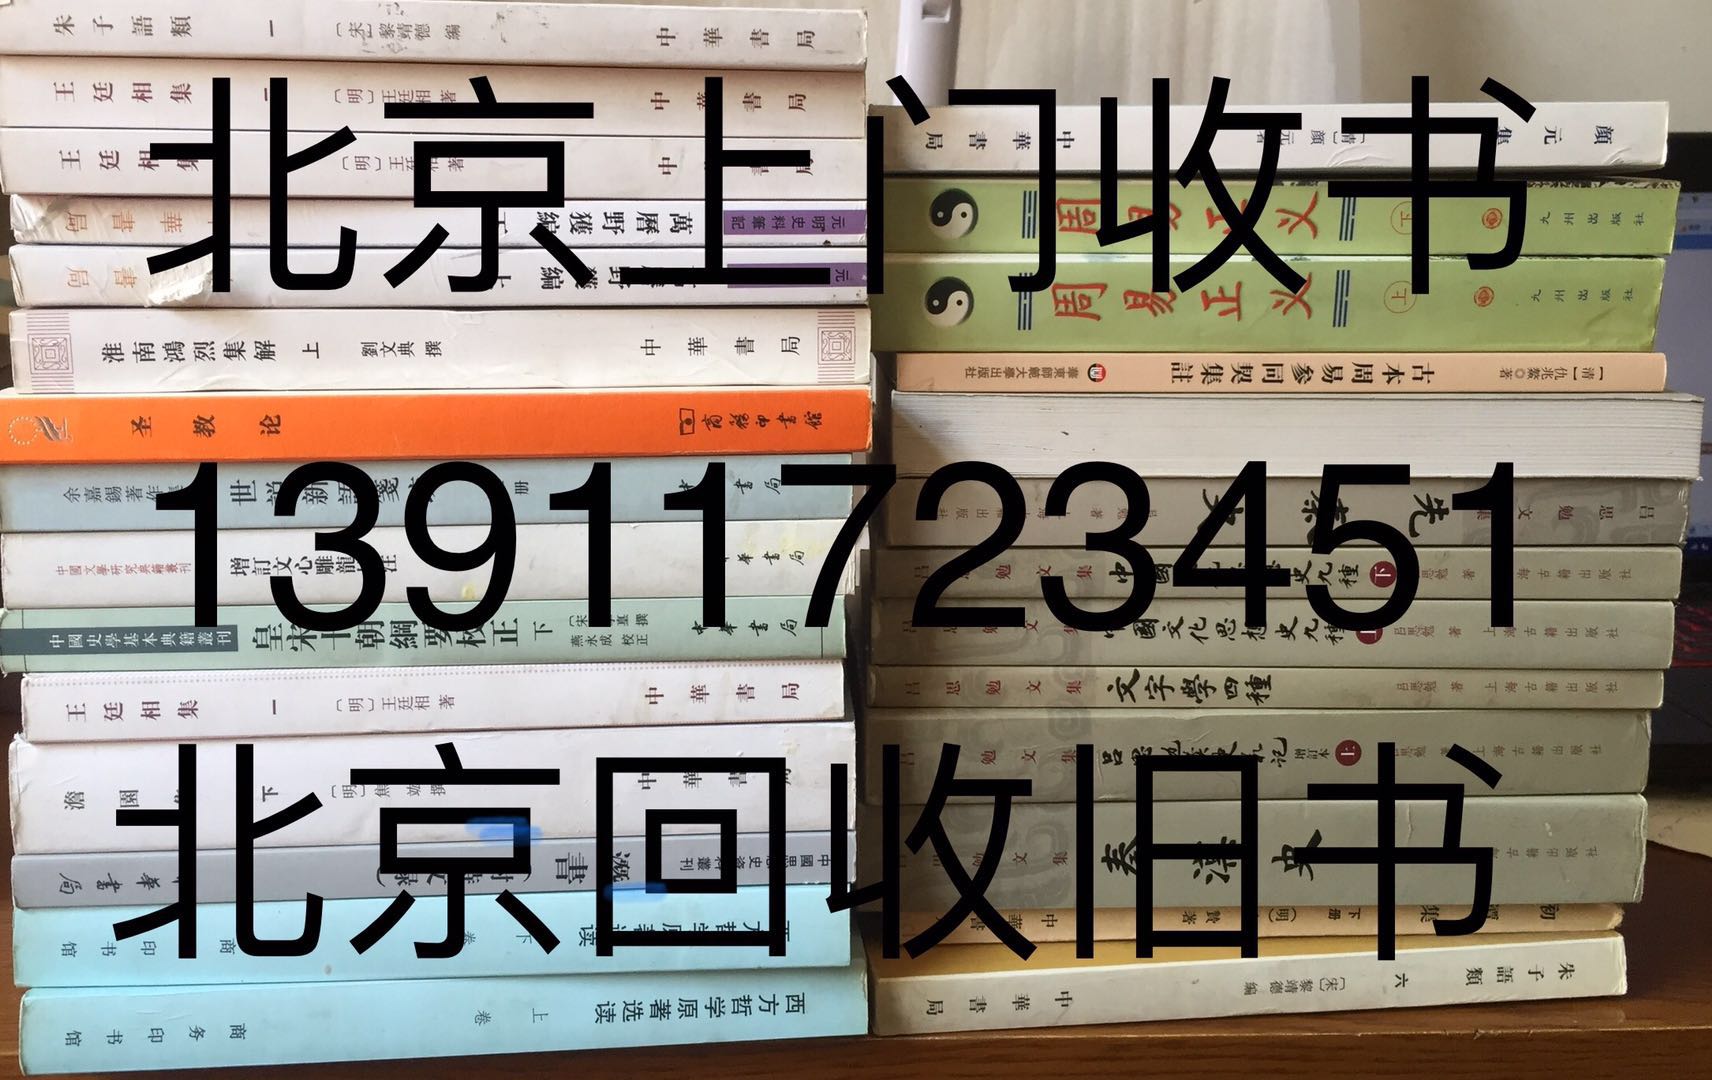 北京 海淀区 田村路 搬家 旧书 二手书 闲置书 废纸收购旧书二手书旧书回收网